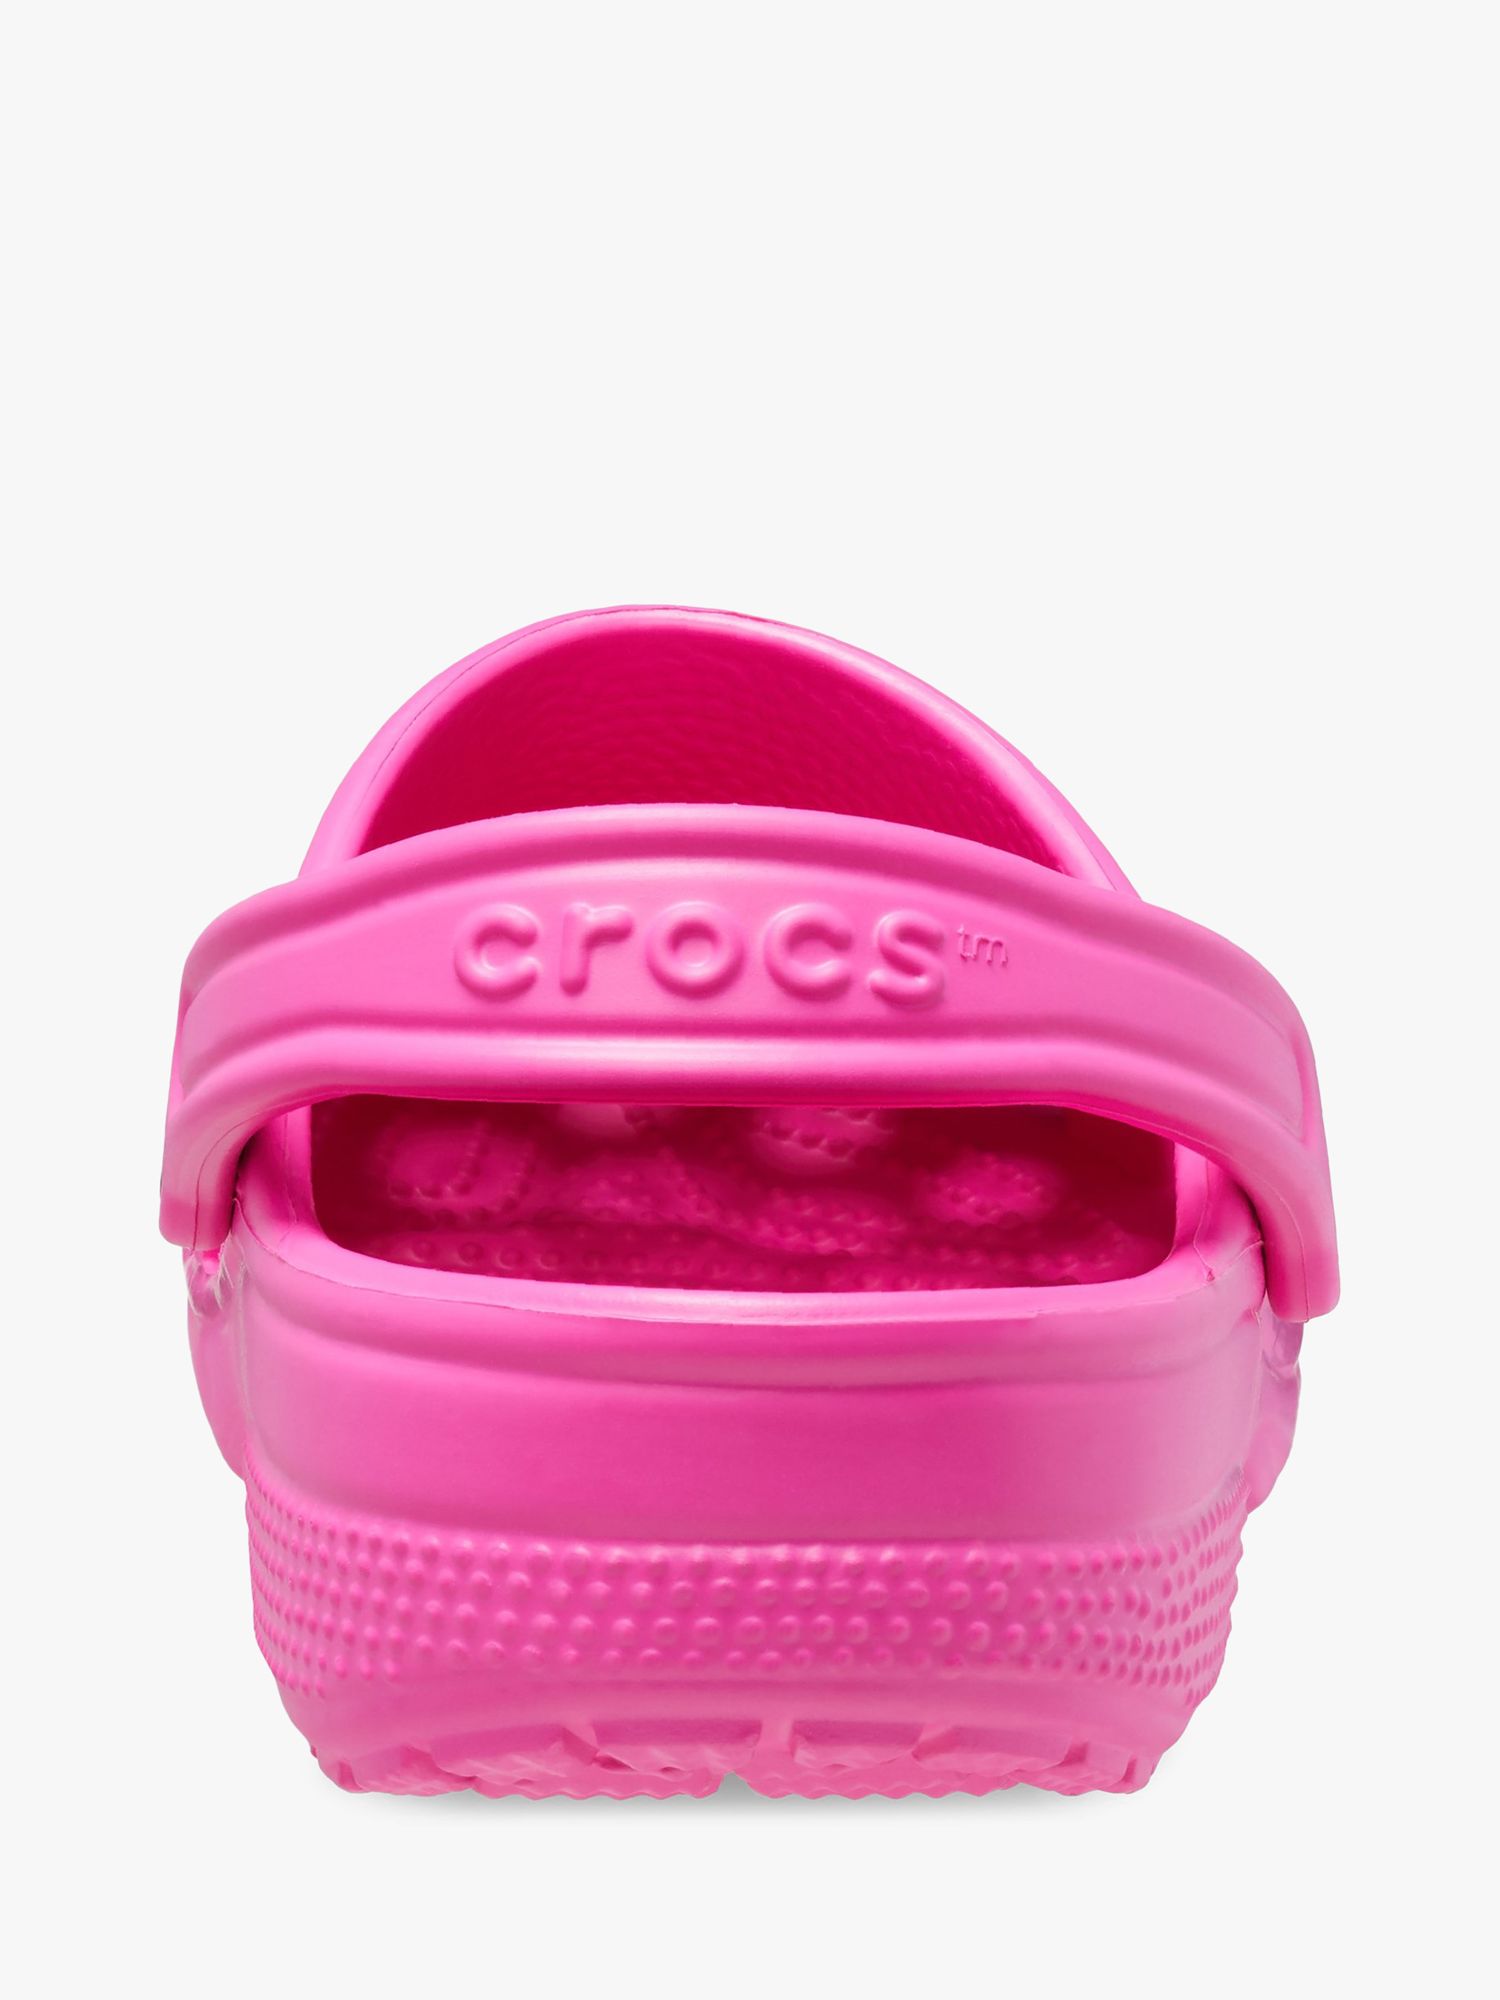 Crocs Classic Clogs, Pink at John Lewis & Partners